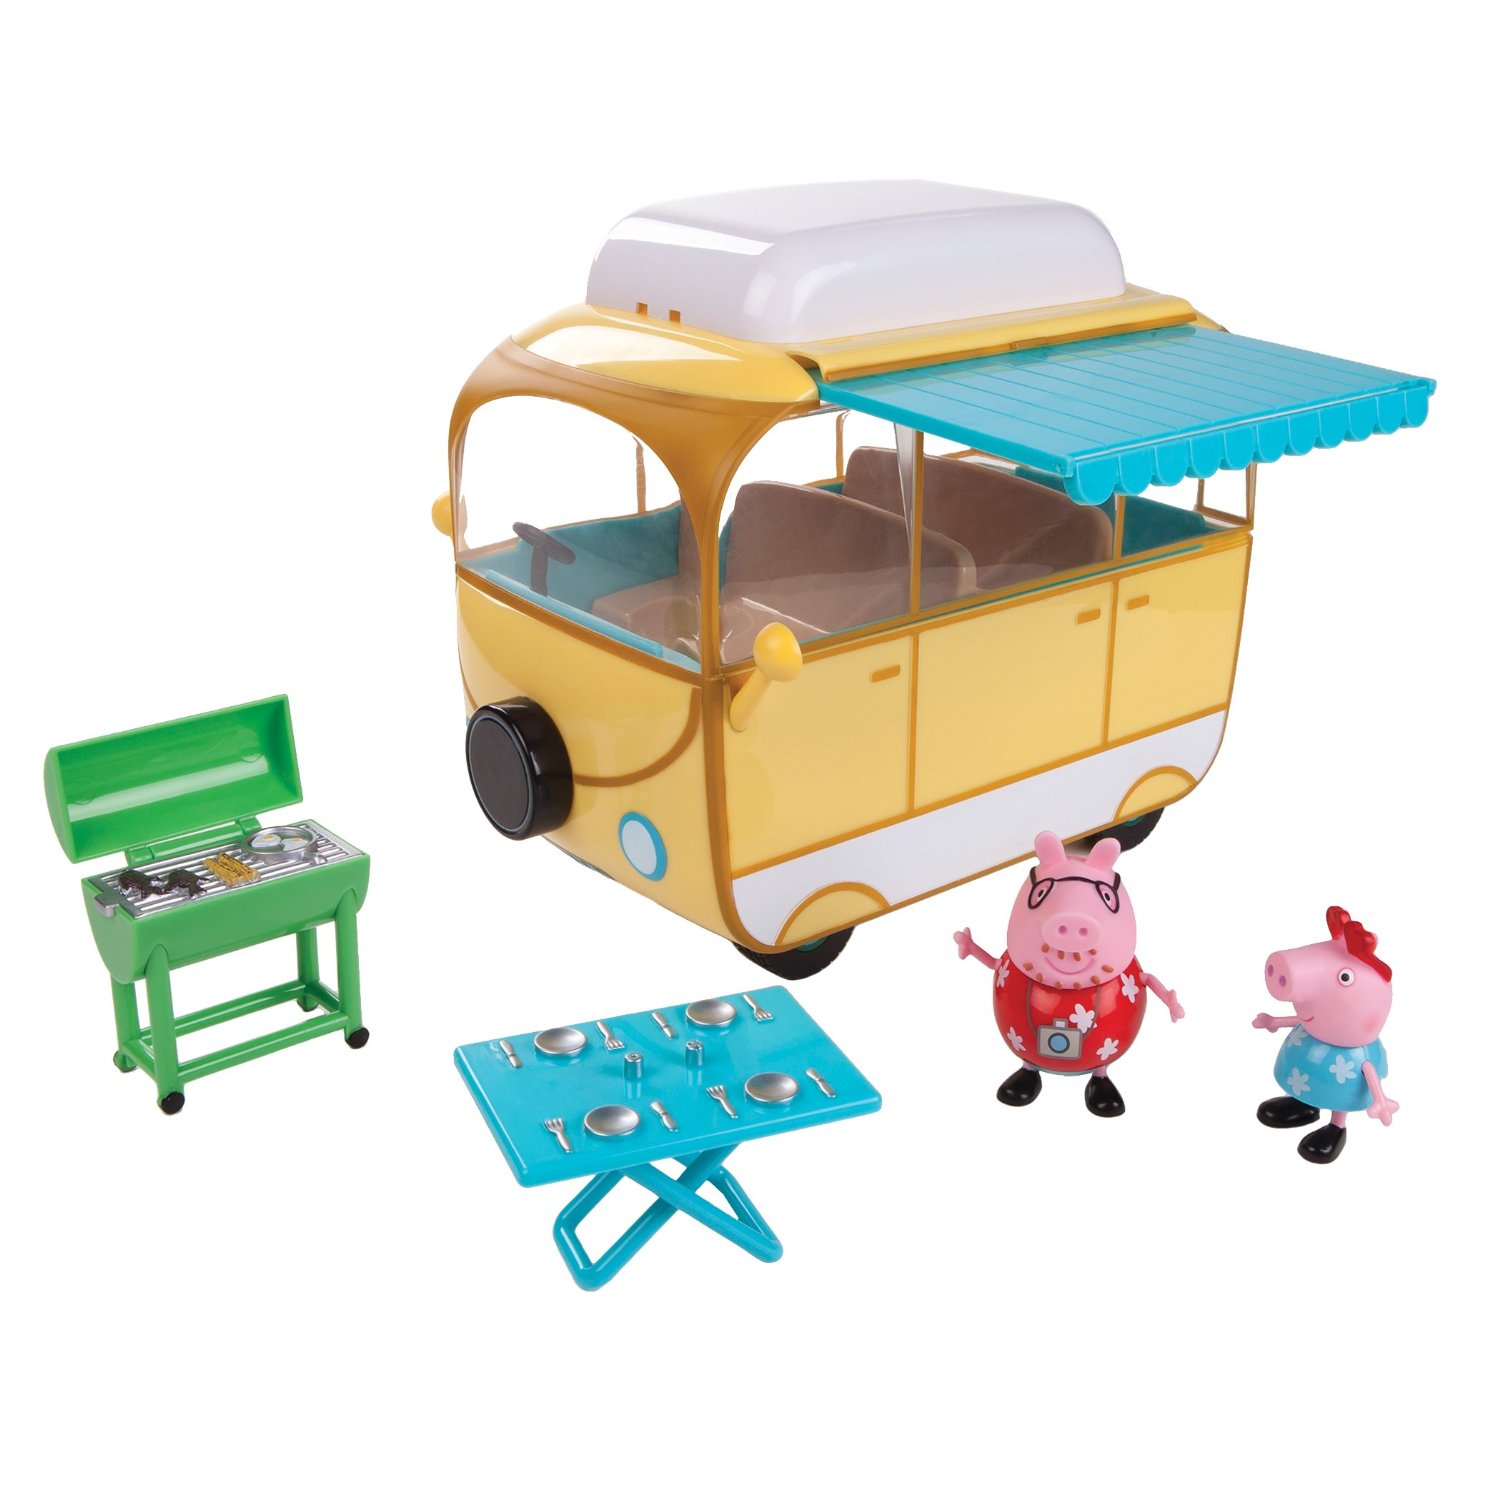 Peppa Pig Family Campervan – Just $16.29!